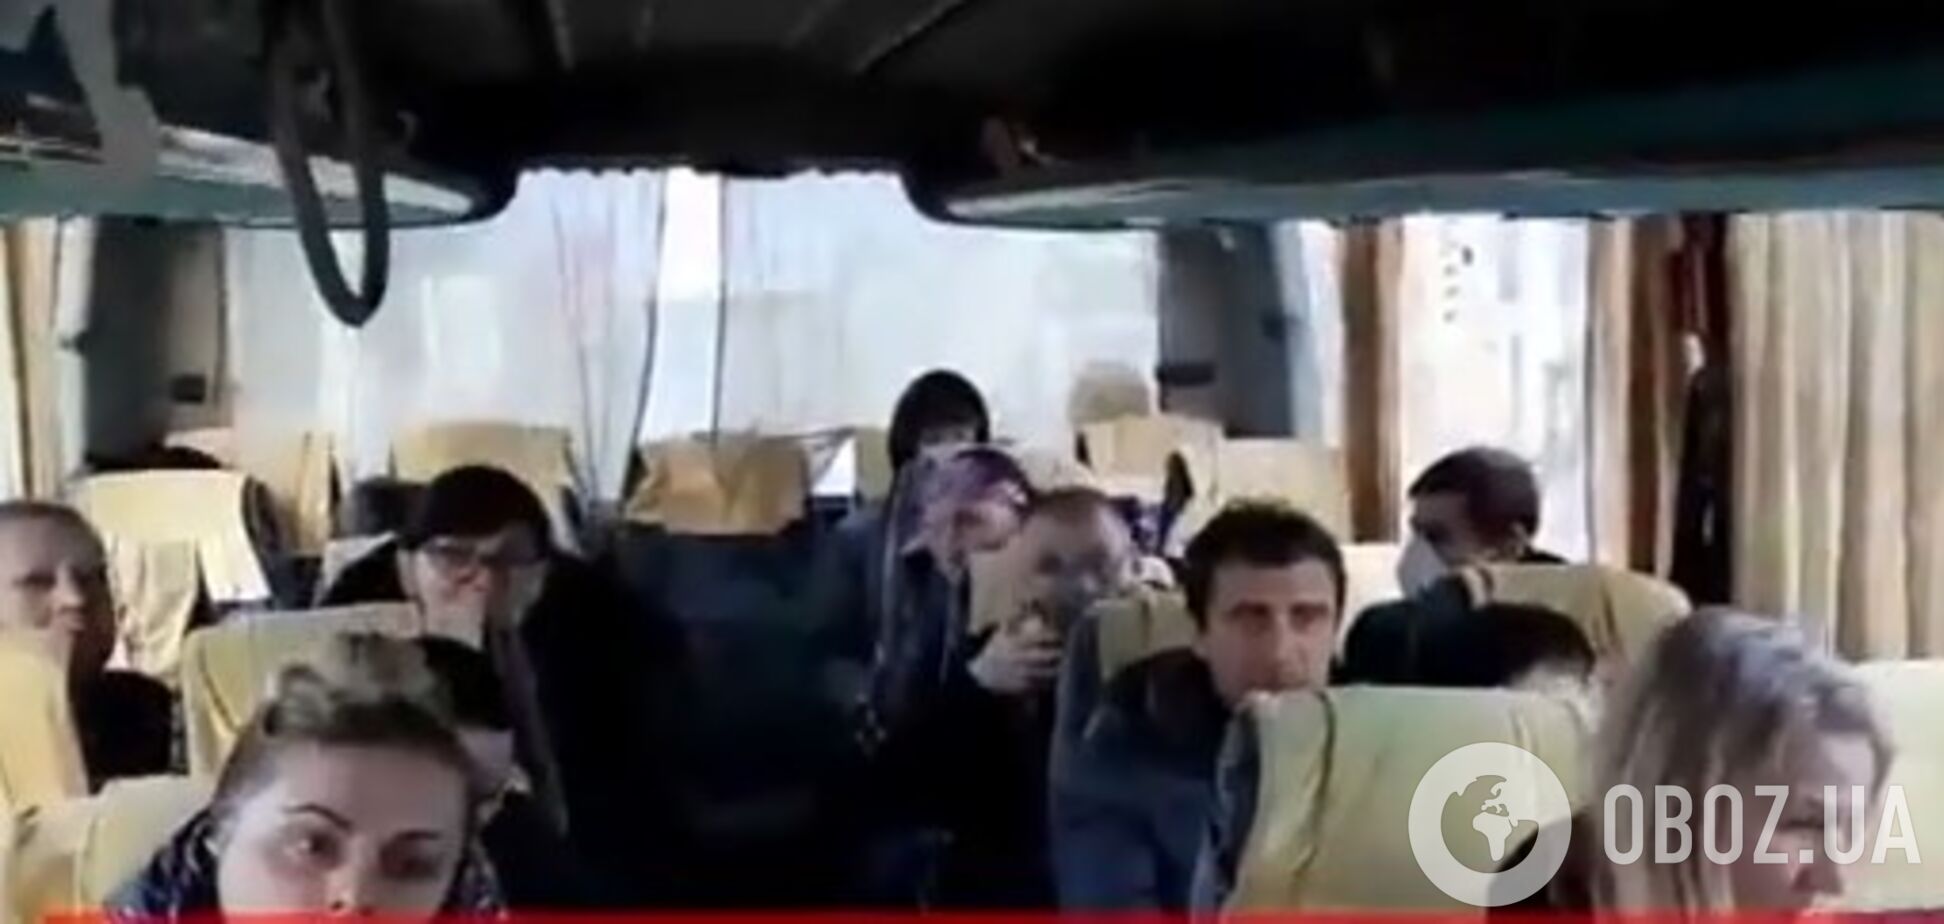 Українці, що застрягли в ЄС через карантин, екстрено звернулися до Зеленського